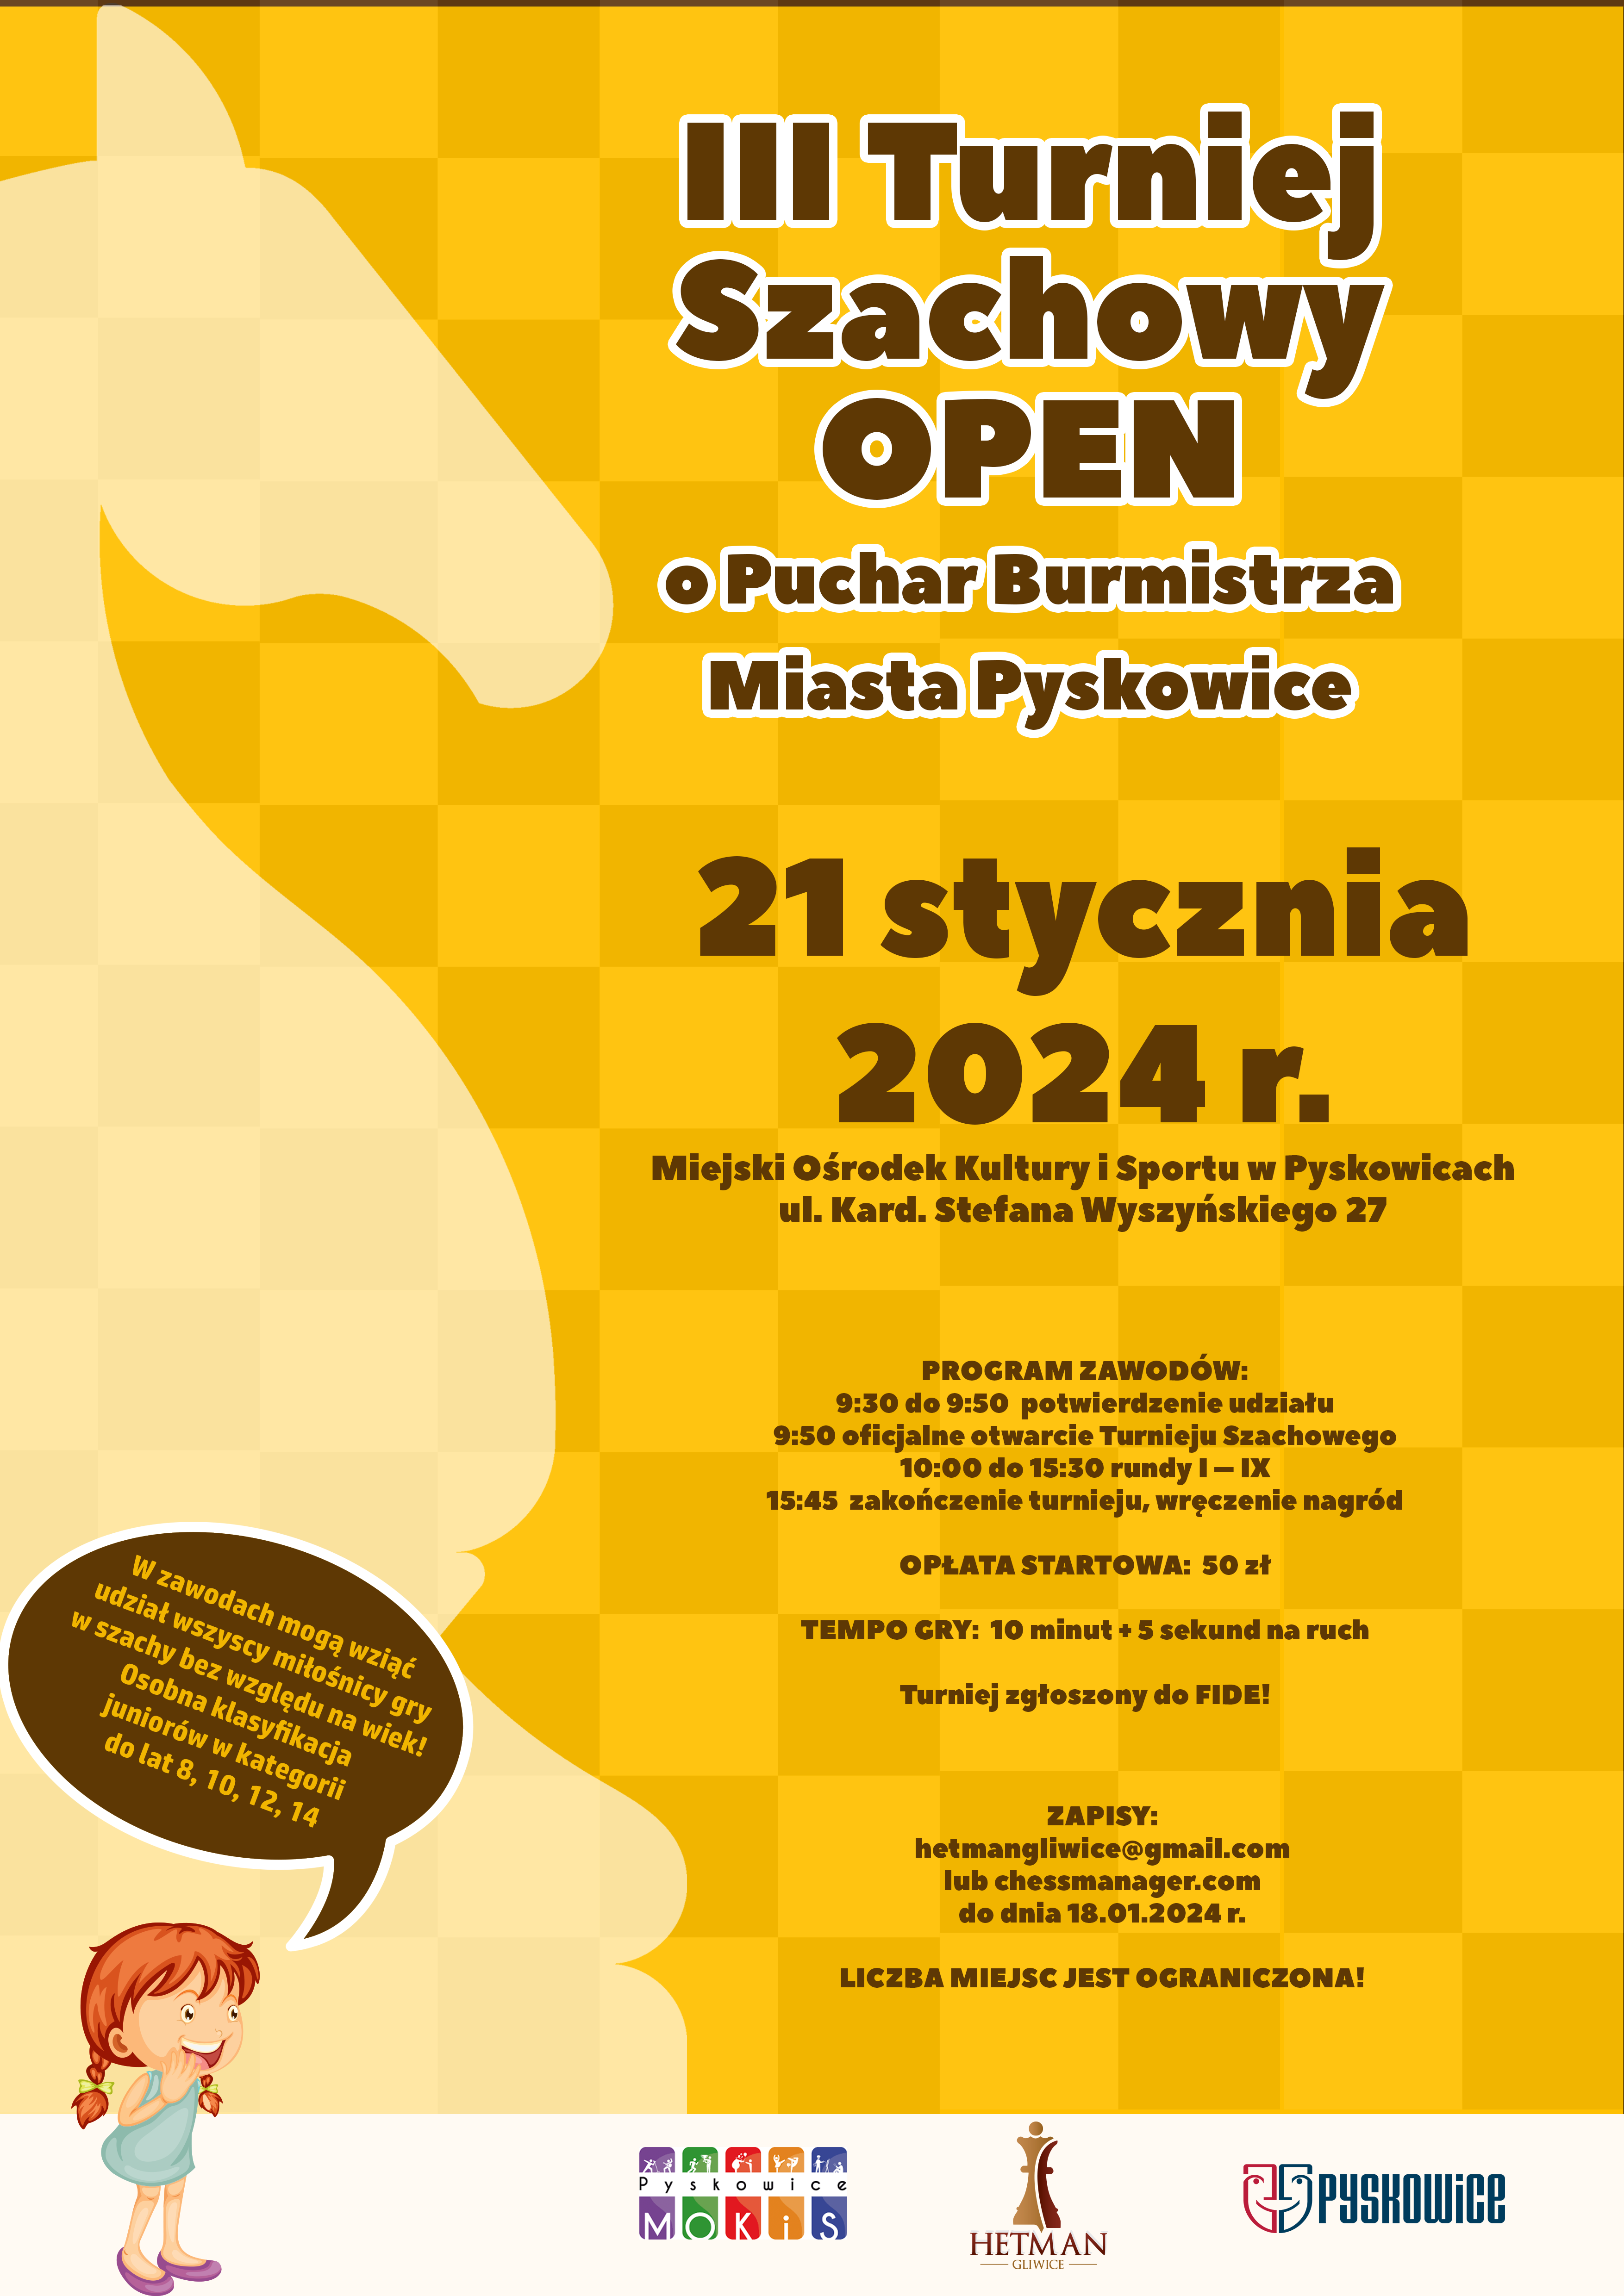 Plakat promujący III Turniej Szachowy OPEN